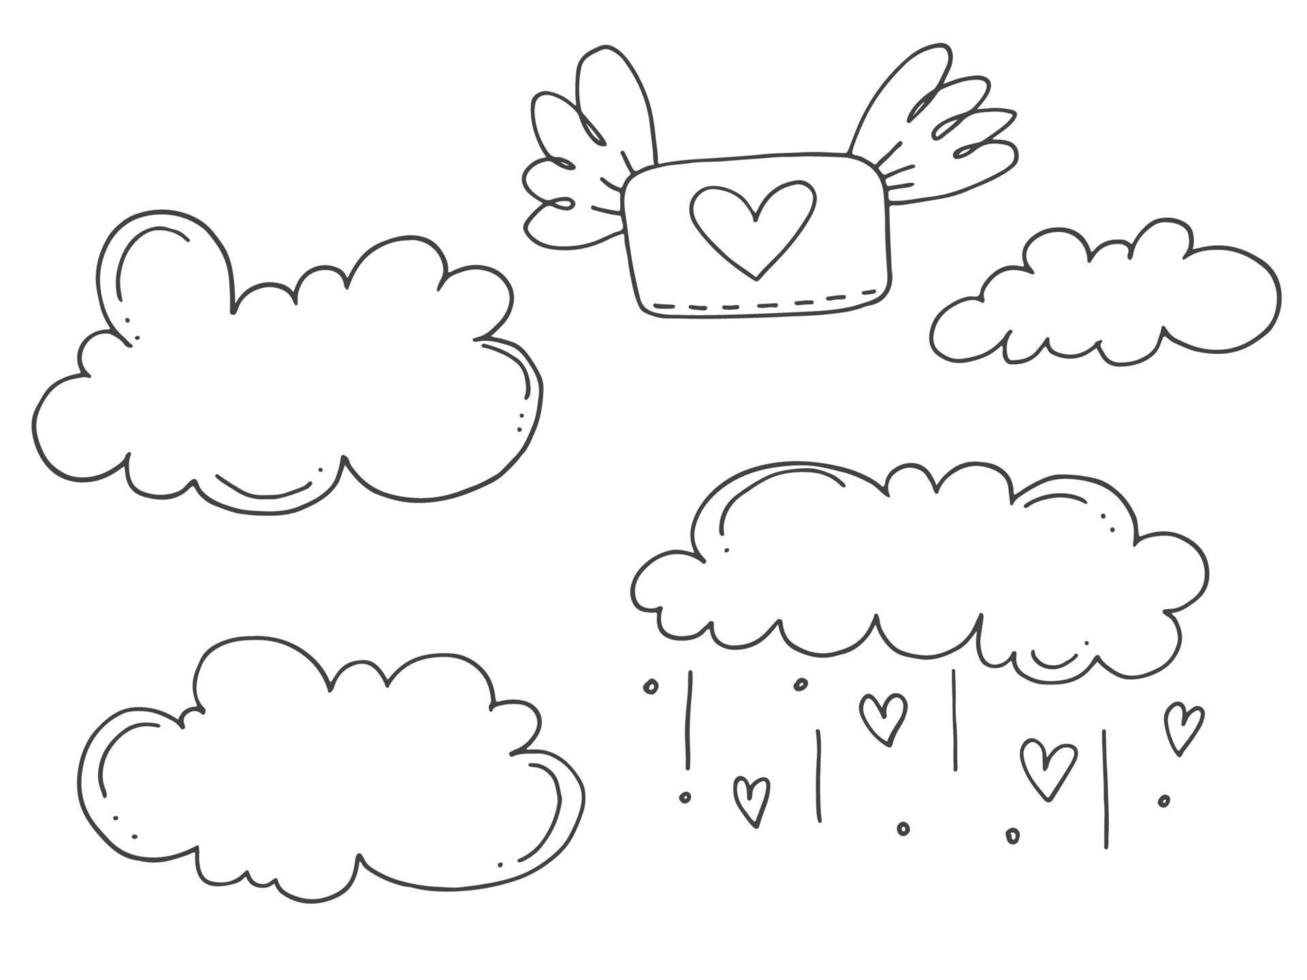 ensemble d'éléments de doodle mignons dessinés à la main sur l'amour. autocollants de message pour les applications. icônes pour la saint valentin, les événements romantiques et le mariage. une lettre d'amour dans une enveloppe avec un coeur dans le ciel avec des nuages. vecteur